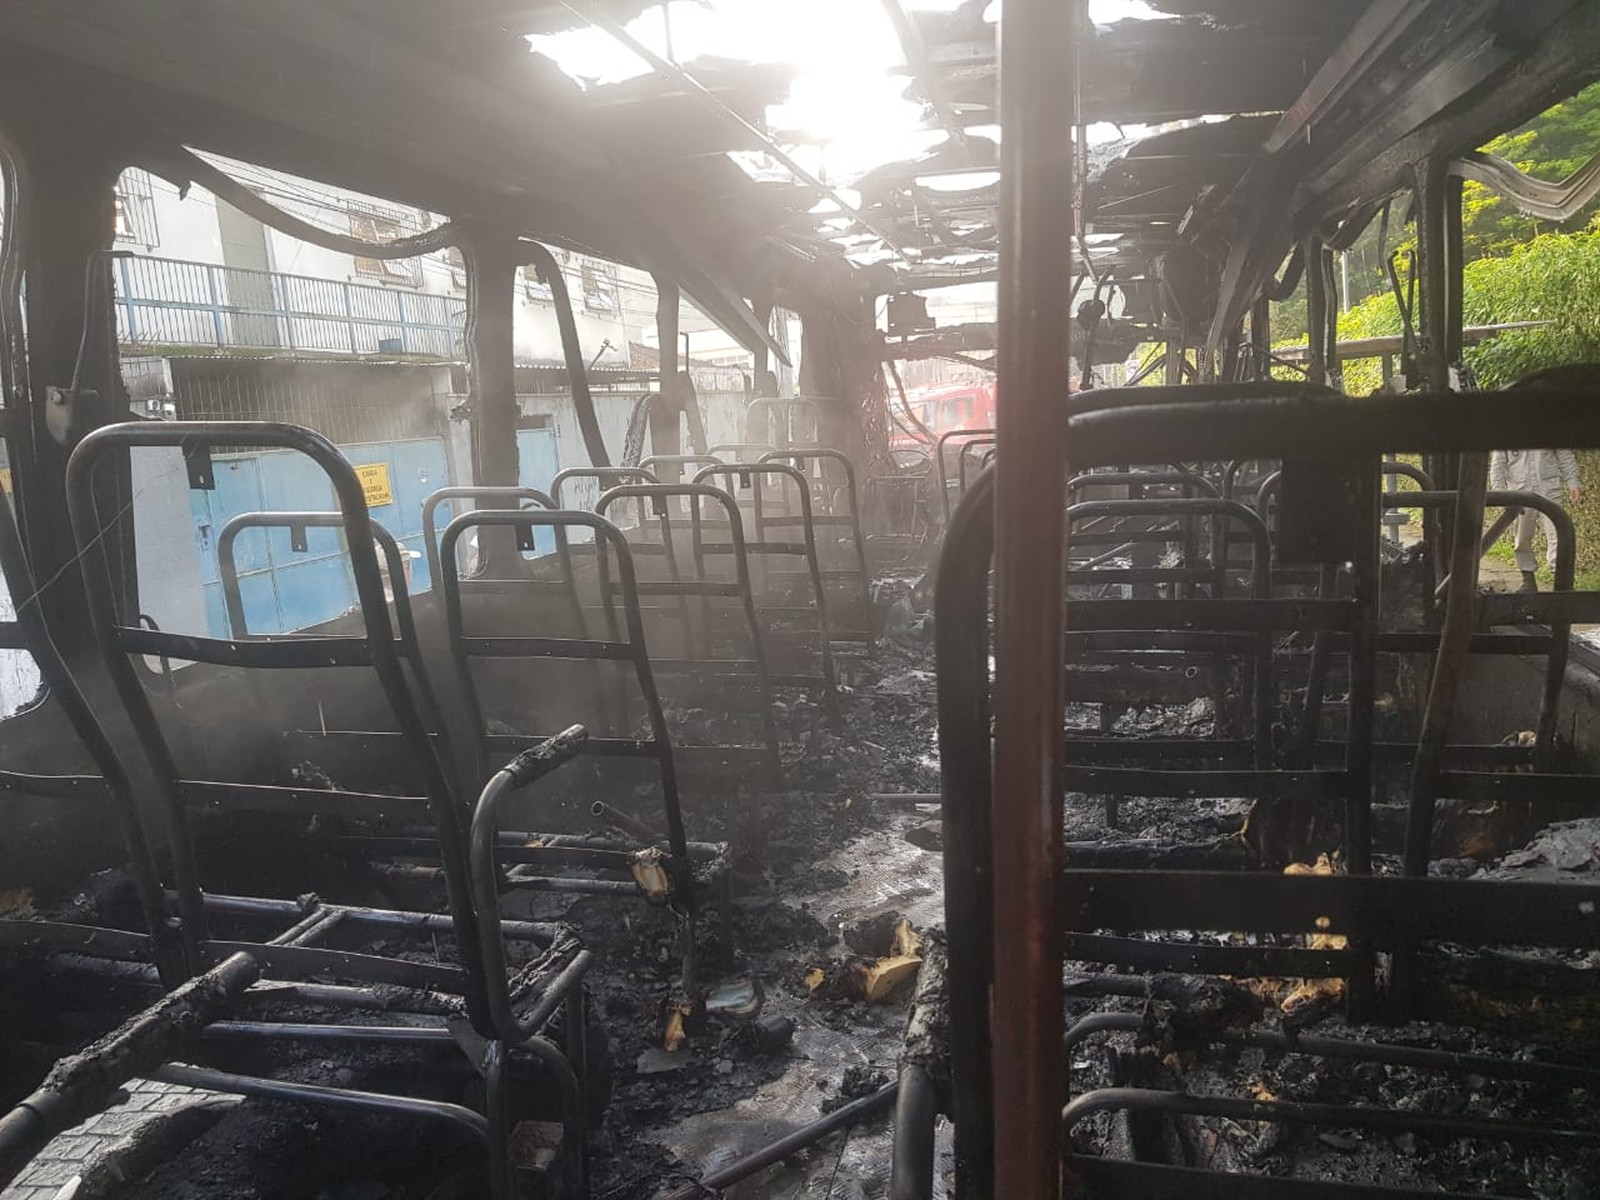 O ônibus totalmente destriído após o incêndio (Fotos de leitor)